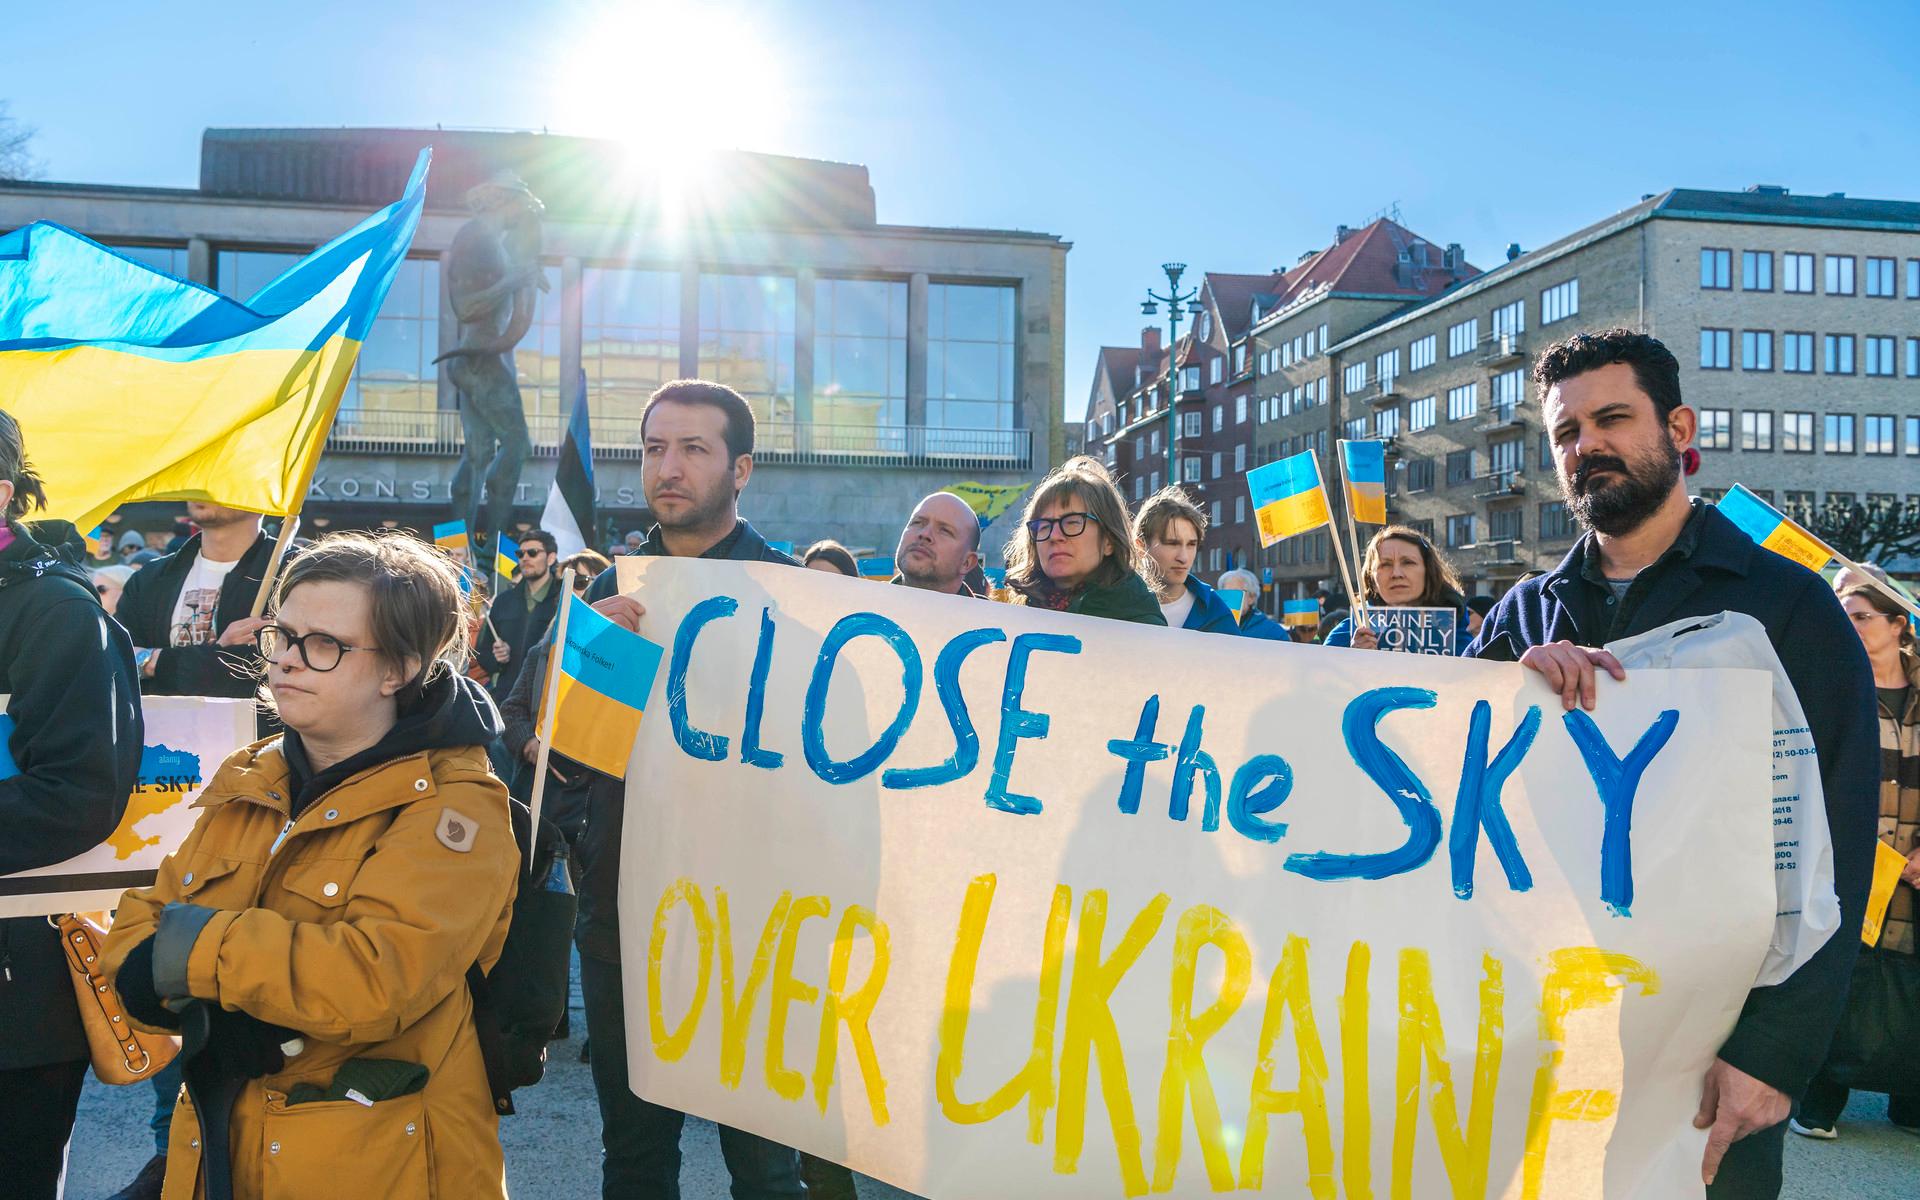 Med sig till demonstrationen hade många ukrainska flaggor och plakat med budskap som ”Close the sky over Ukraine” och ”Stop Putin”